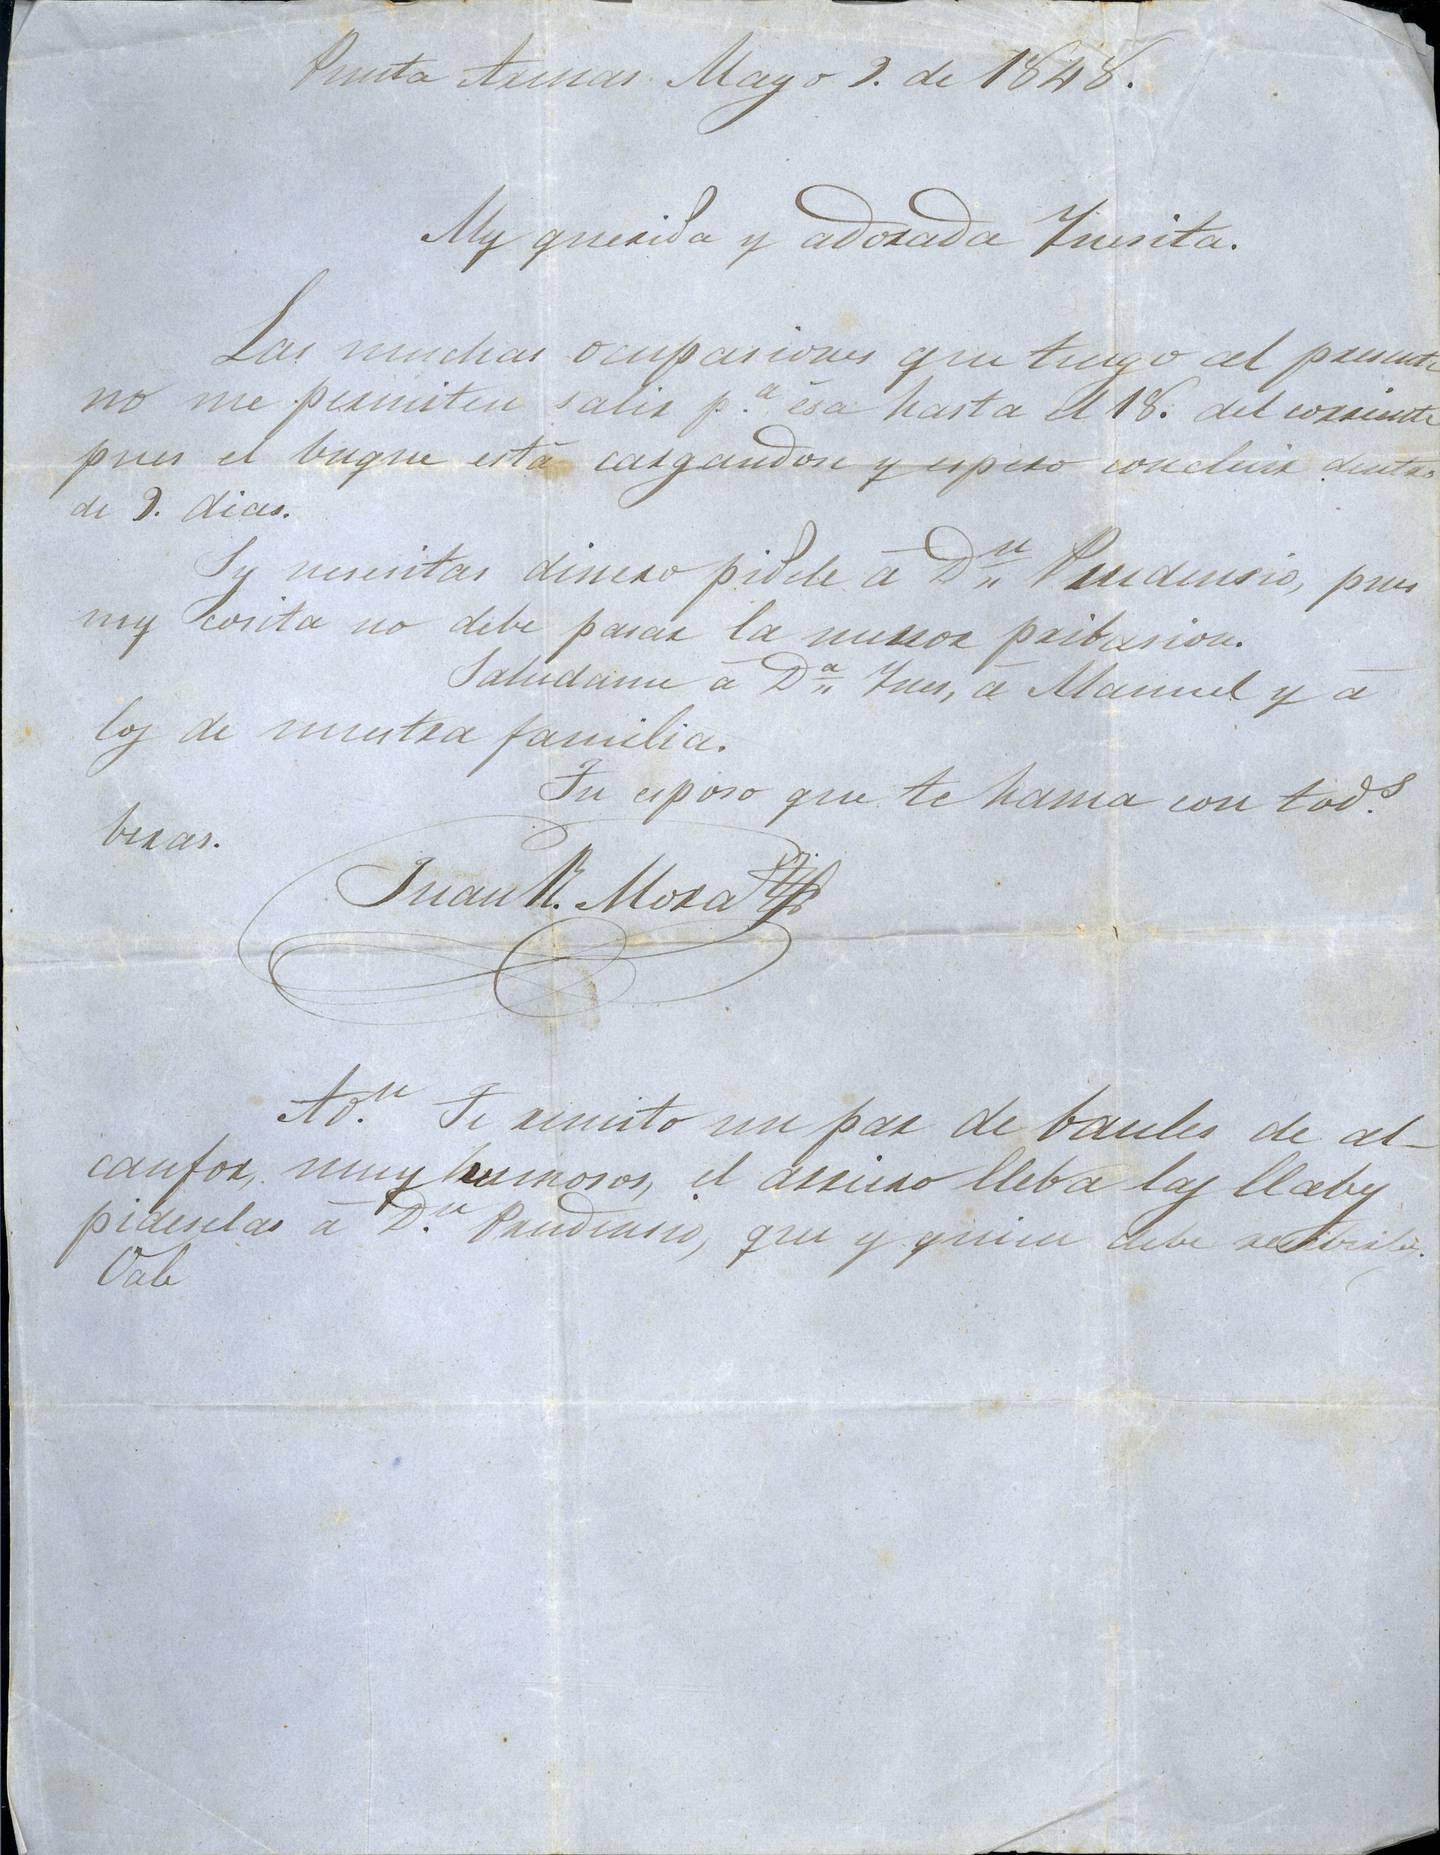 Una carta de Juan Rafael Mora Porras dirigida a su esposa Inés Aguilar escrita en 1848.